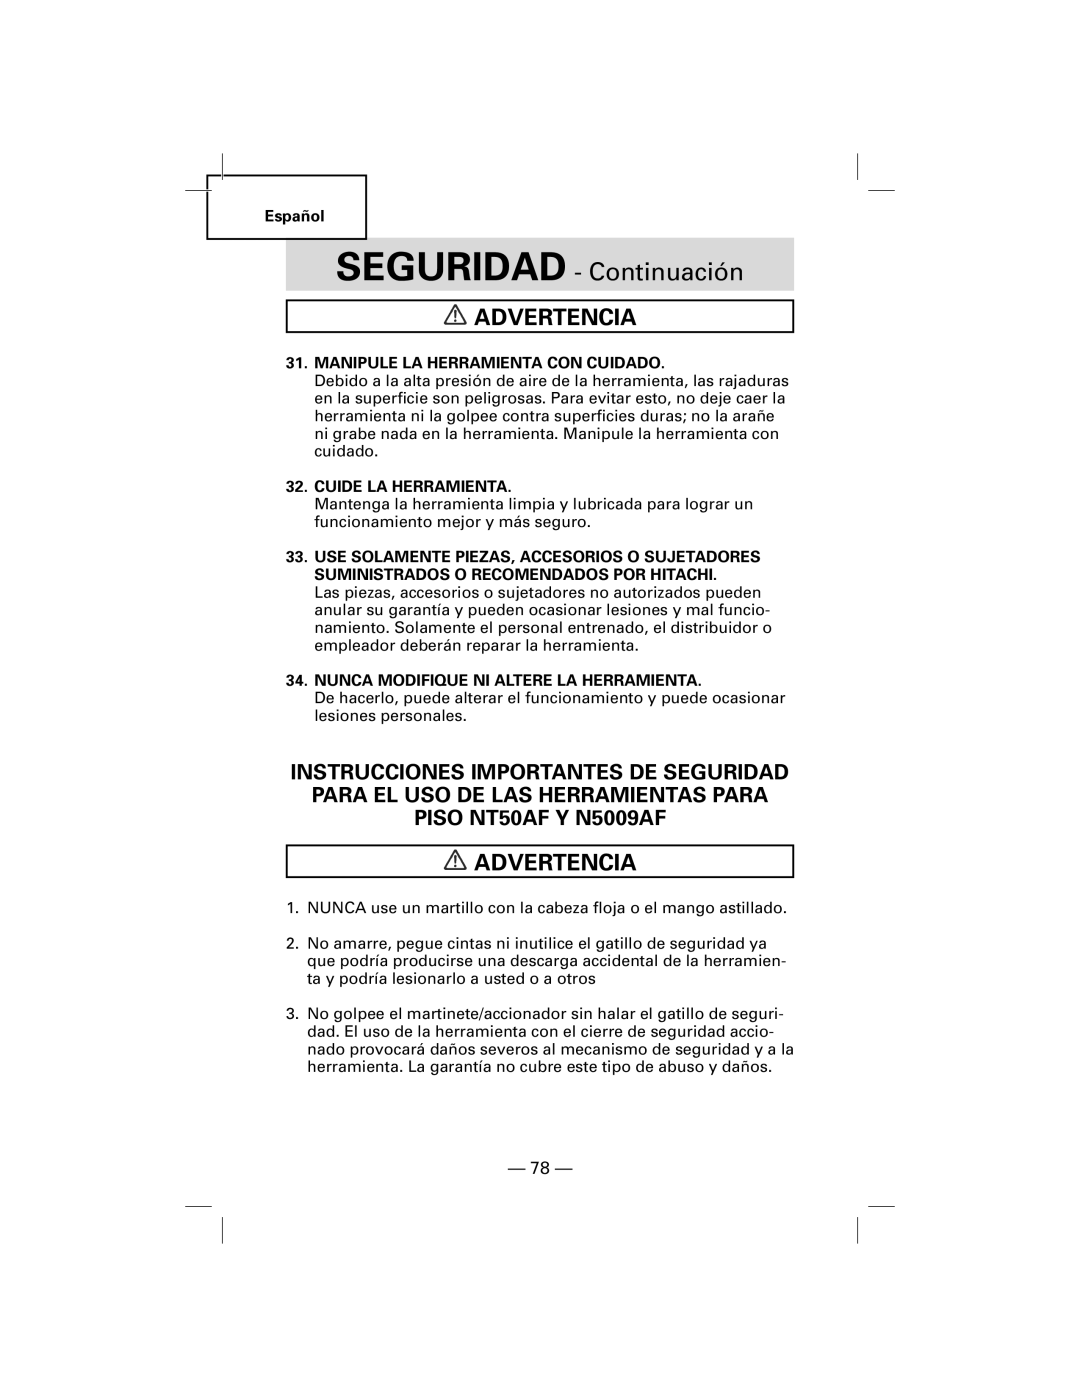 Hitachi N5009AF SEGURIDAD - Continuación, Advertencia, Español, Manipule La Herramienta Con Cuidado, Cuide La Herramienta 